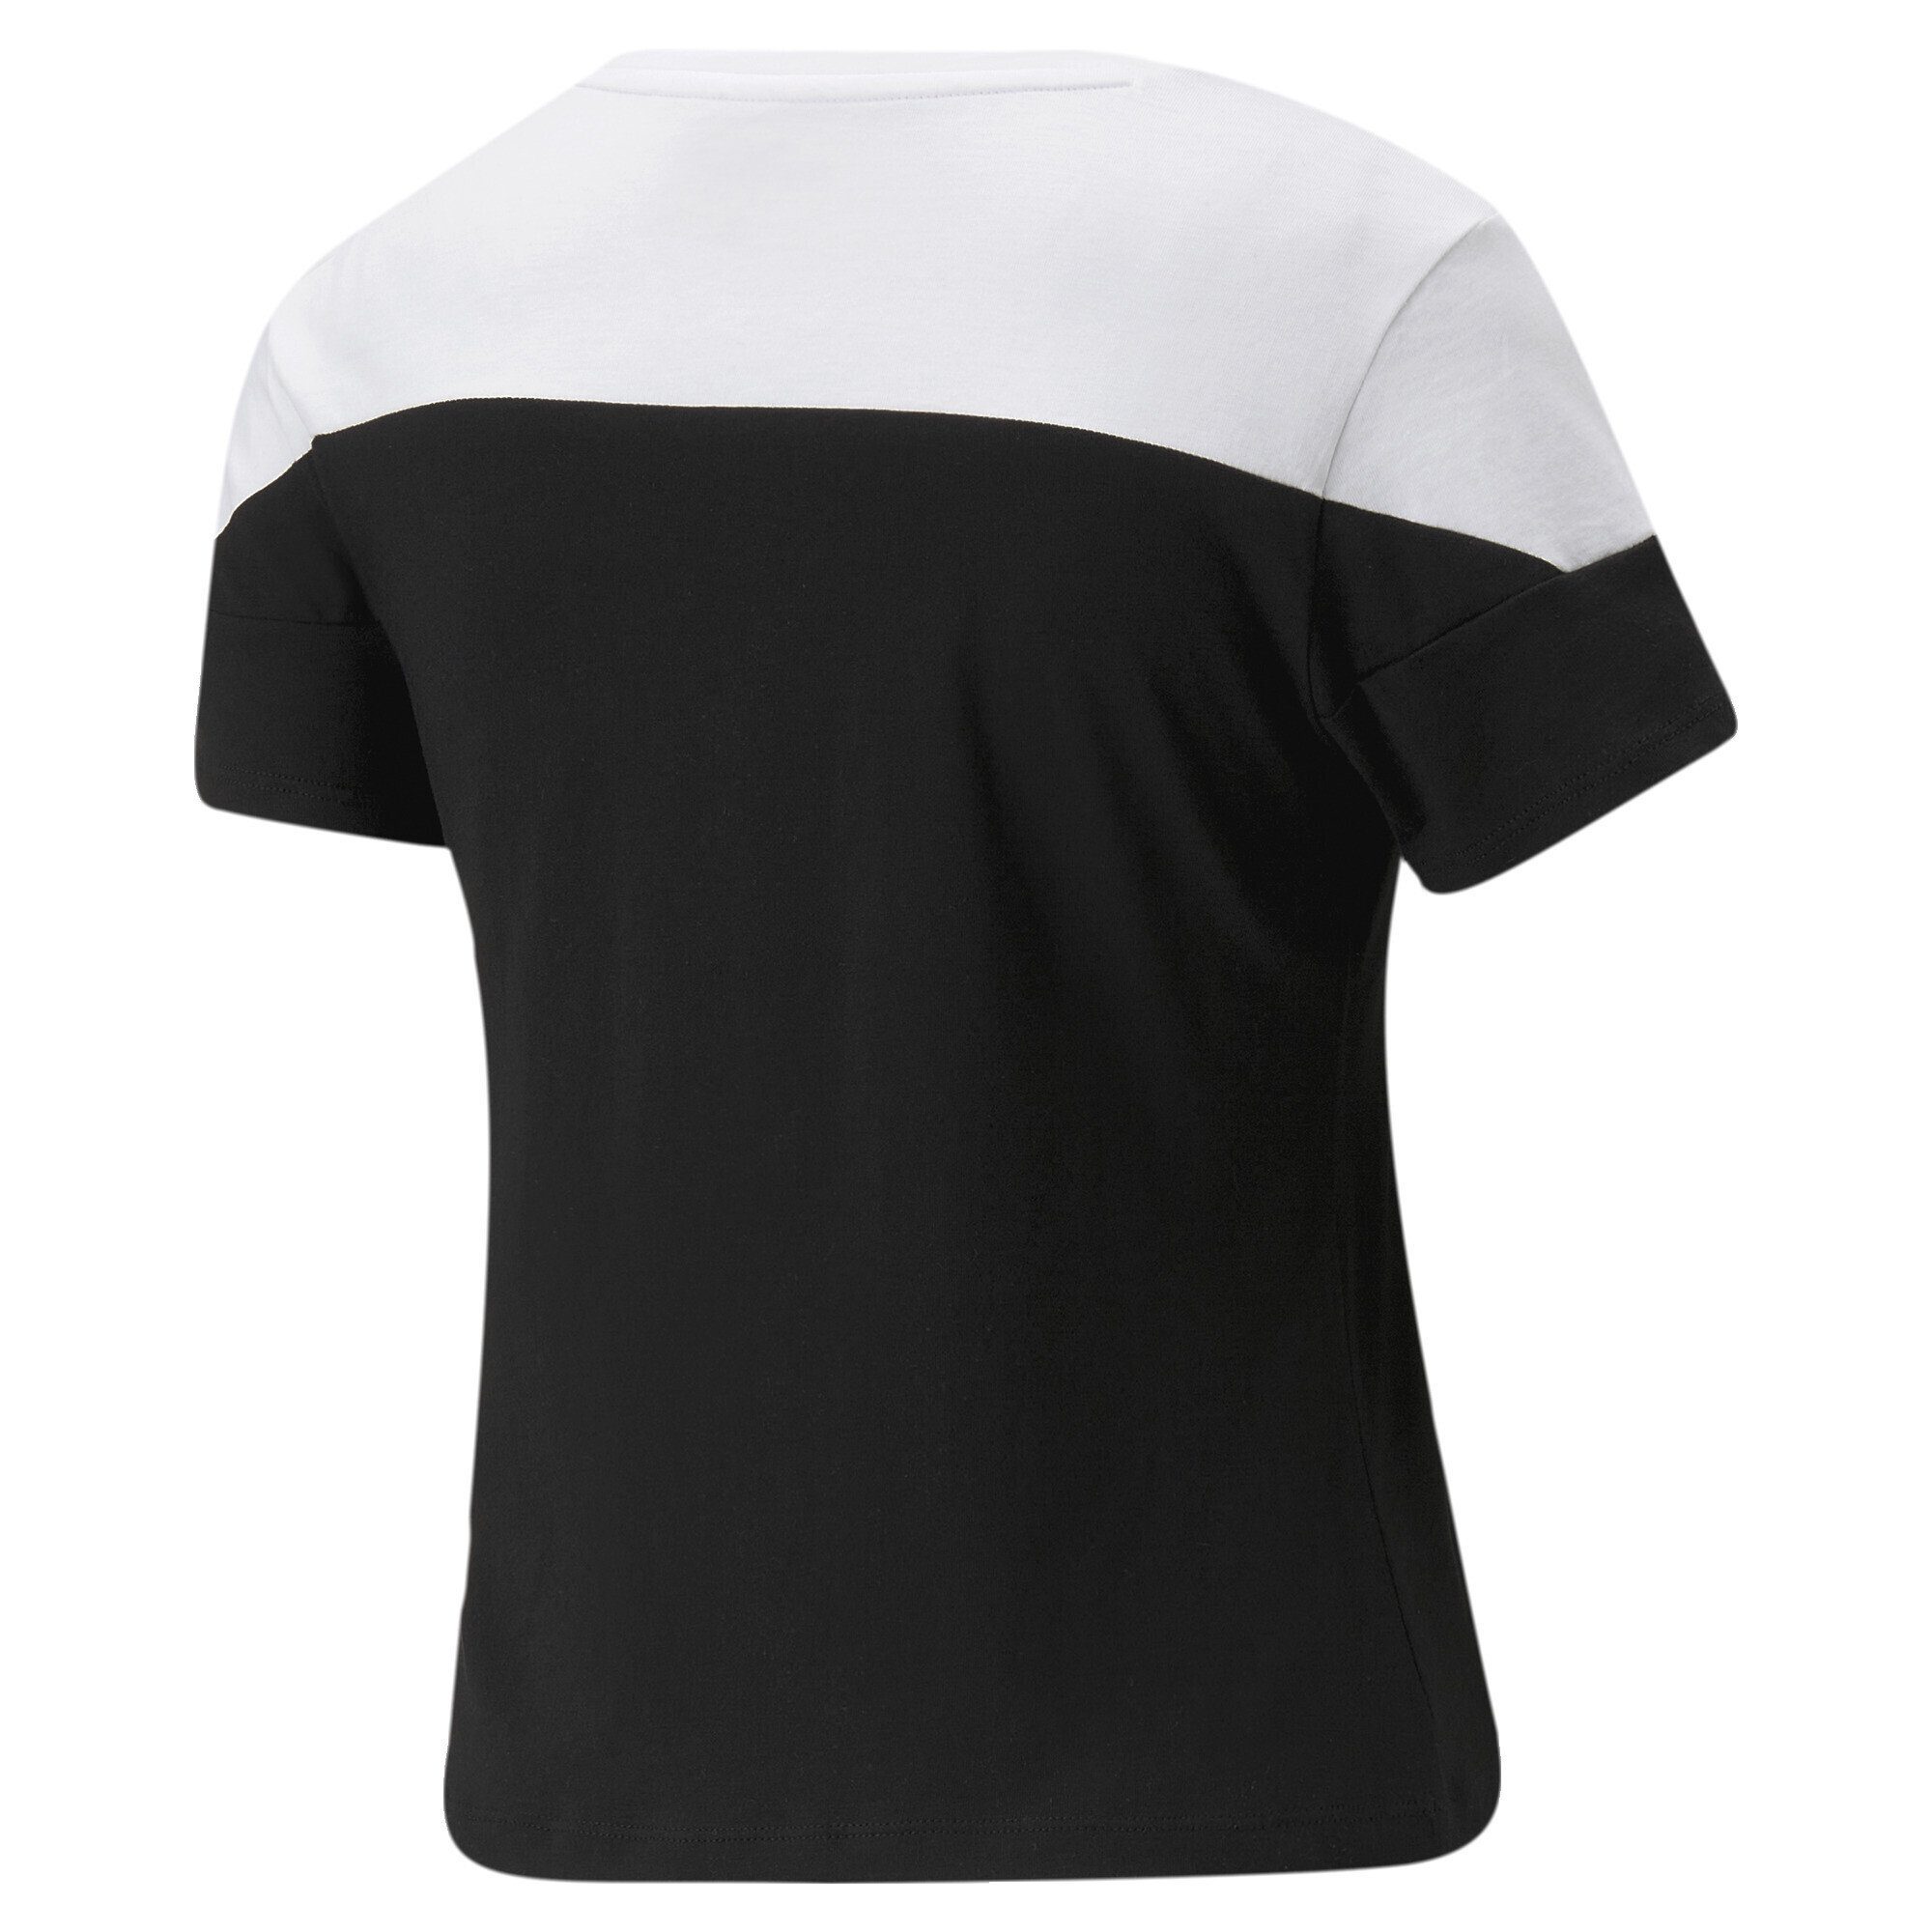 Block Black White the Around T-Shirt Damen T-Shirt PUMA